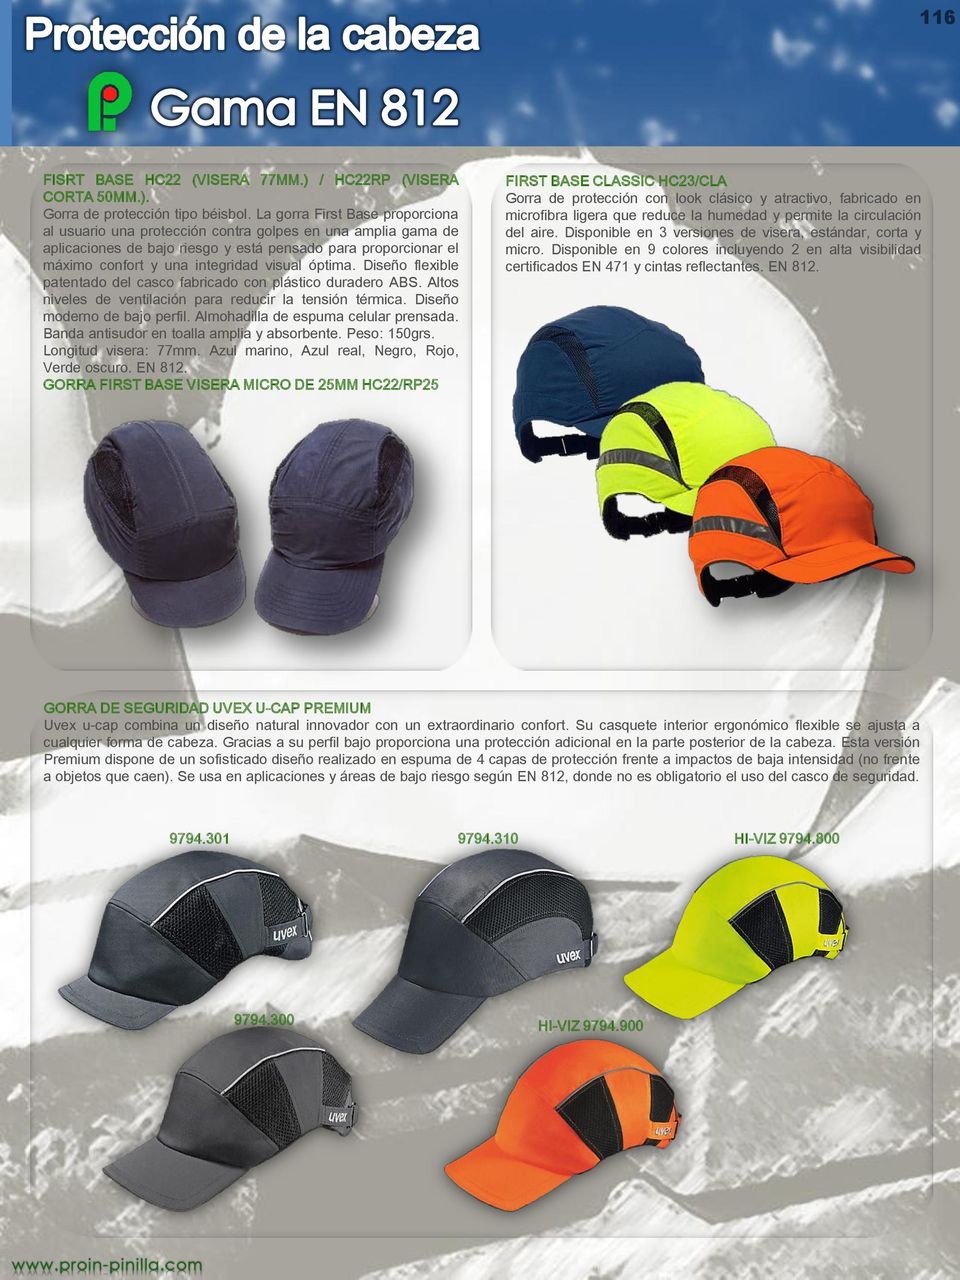 óptima. Diseño flexible patentado del casco fabricado con plástico duradero ABS. Altos niveles de ventilación para reducir la tensión térmica. Diseño moderno de bajo perfil.